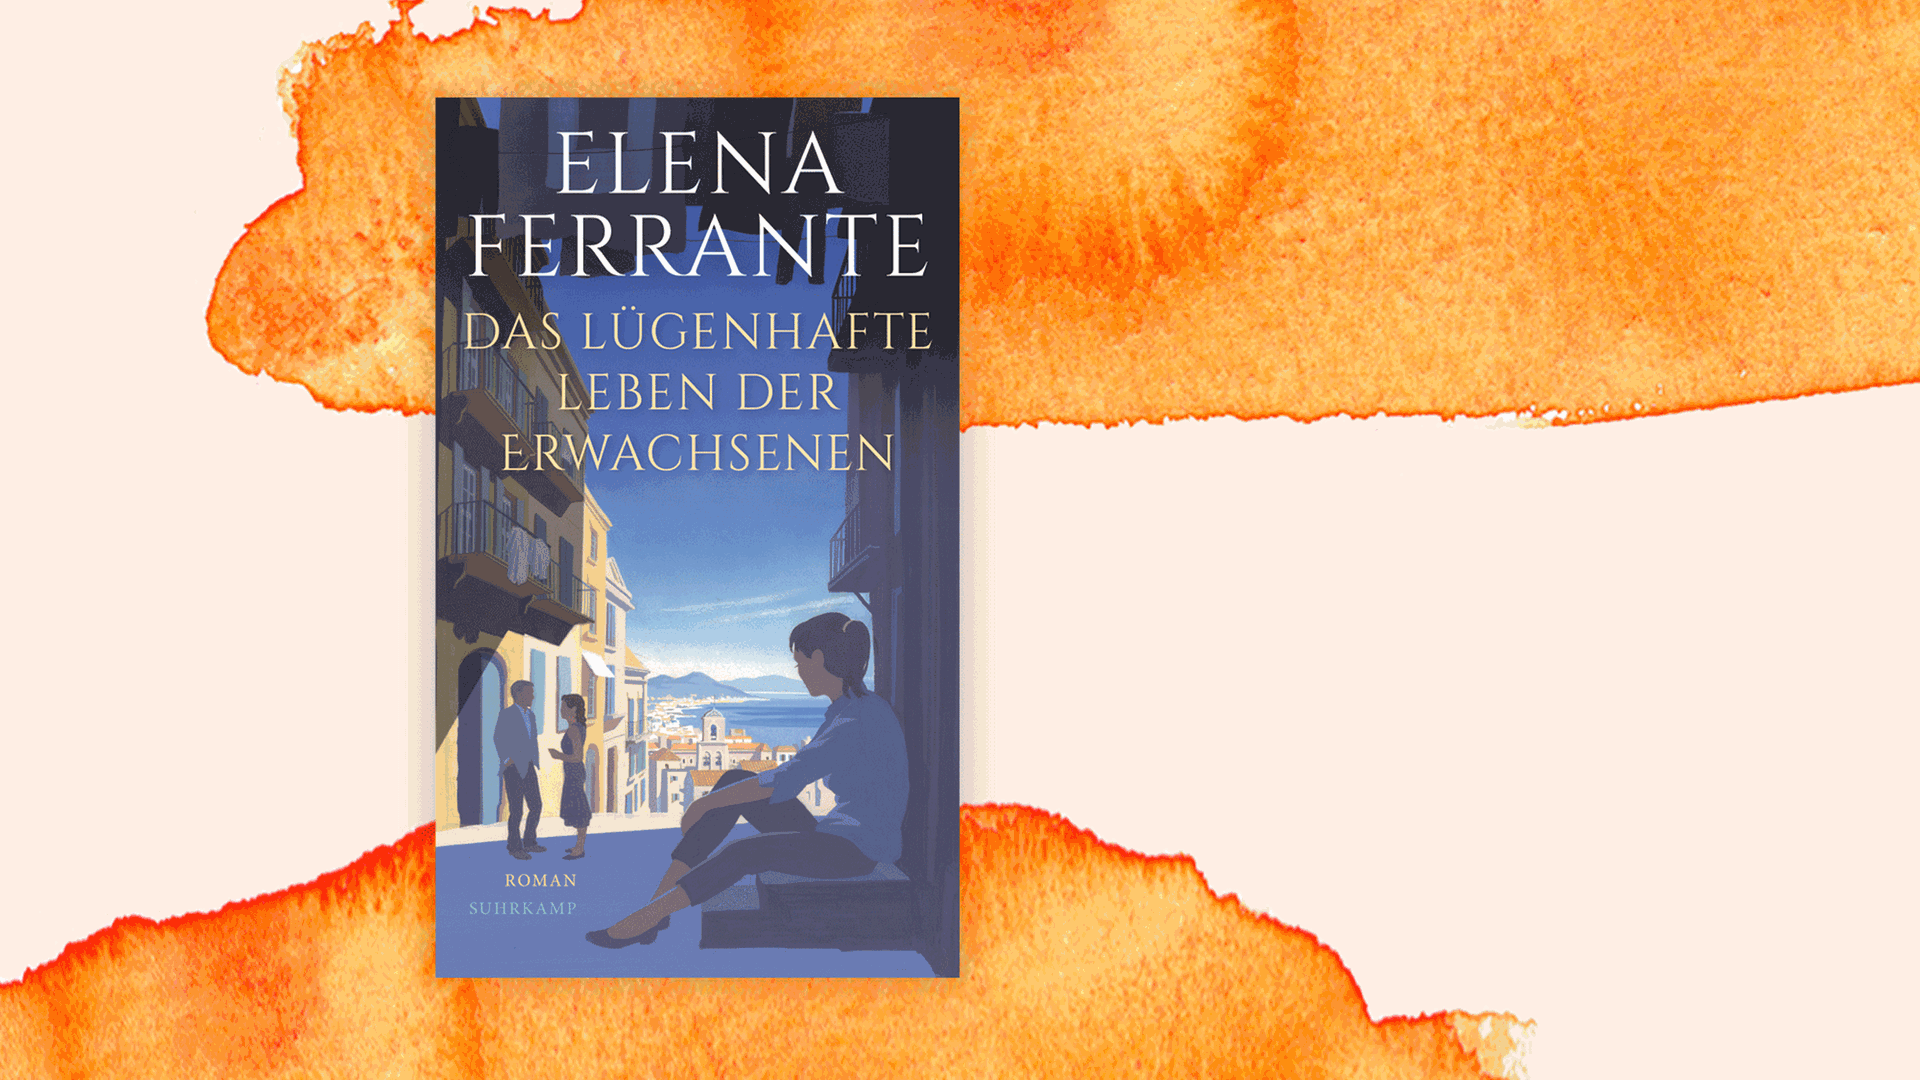 Cover des neuen Romans von Elena Ferrante: "Das lügenhafte Leben der Erwachsenen".